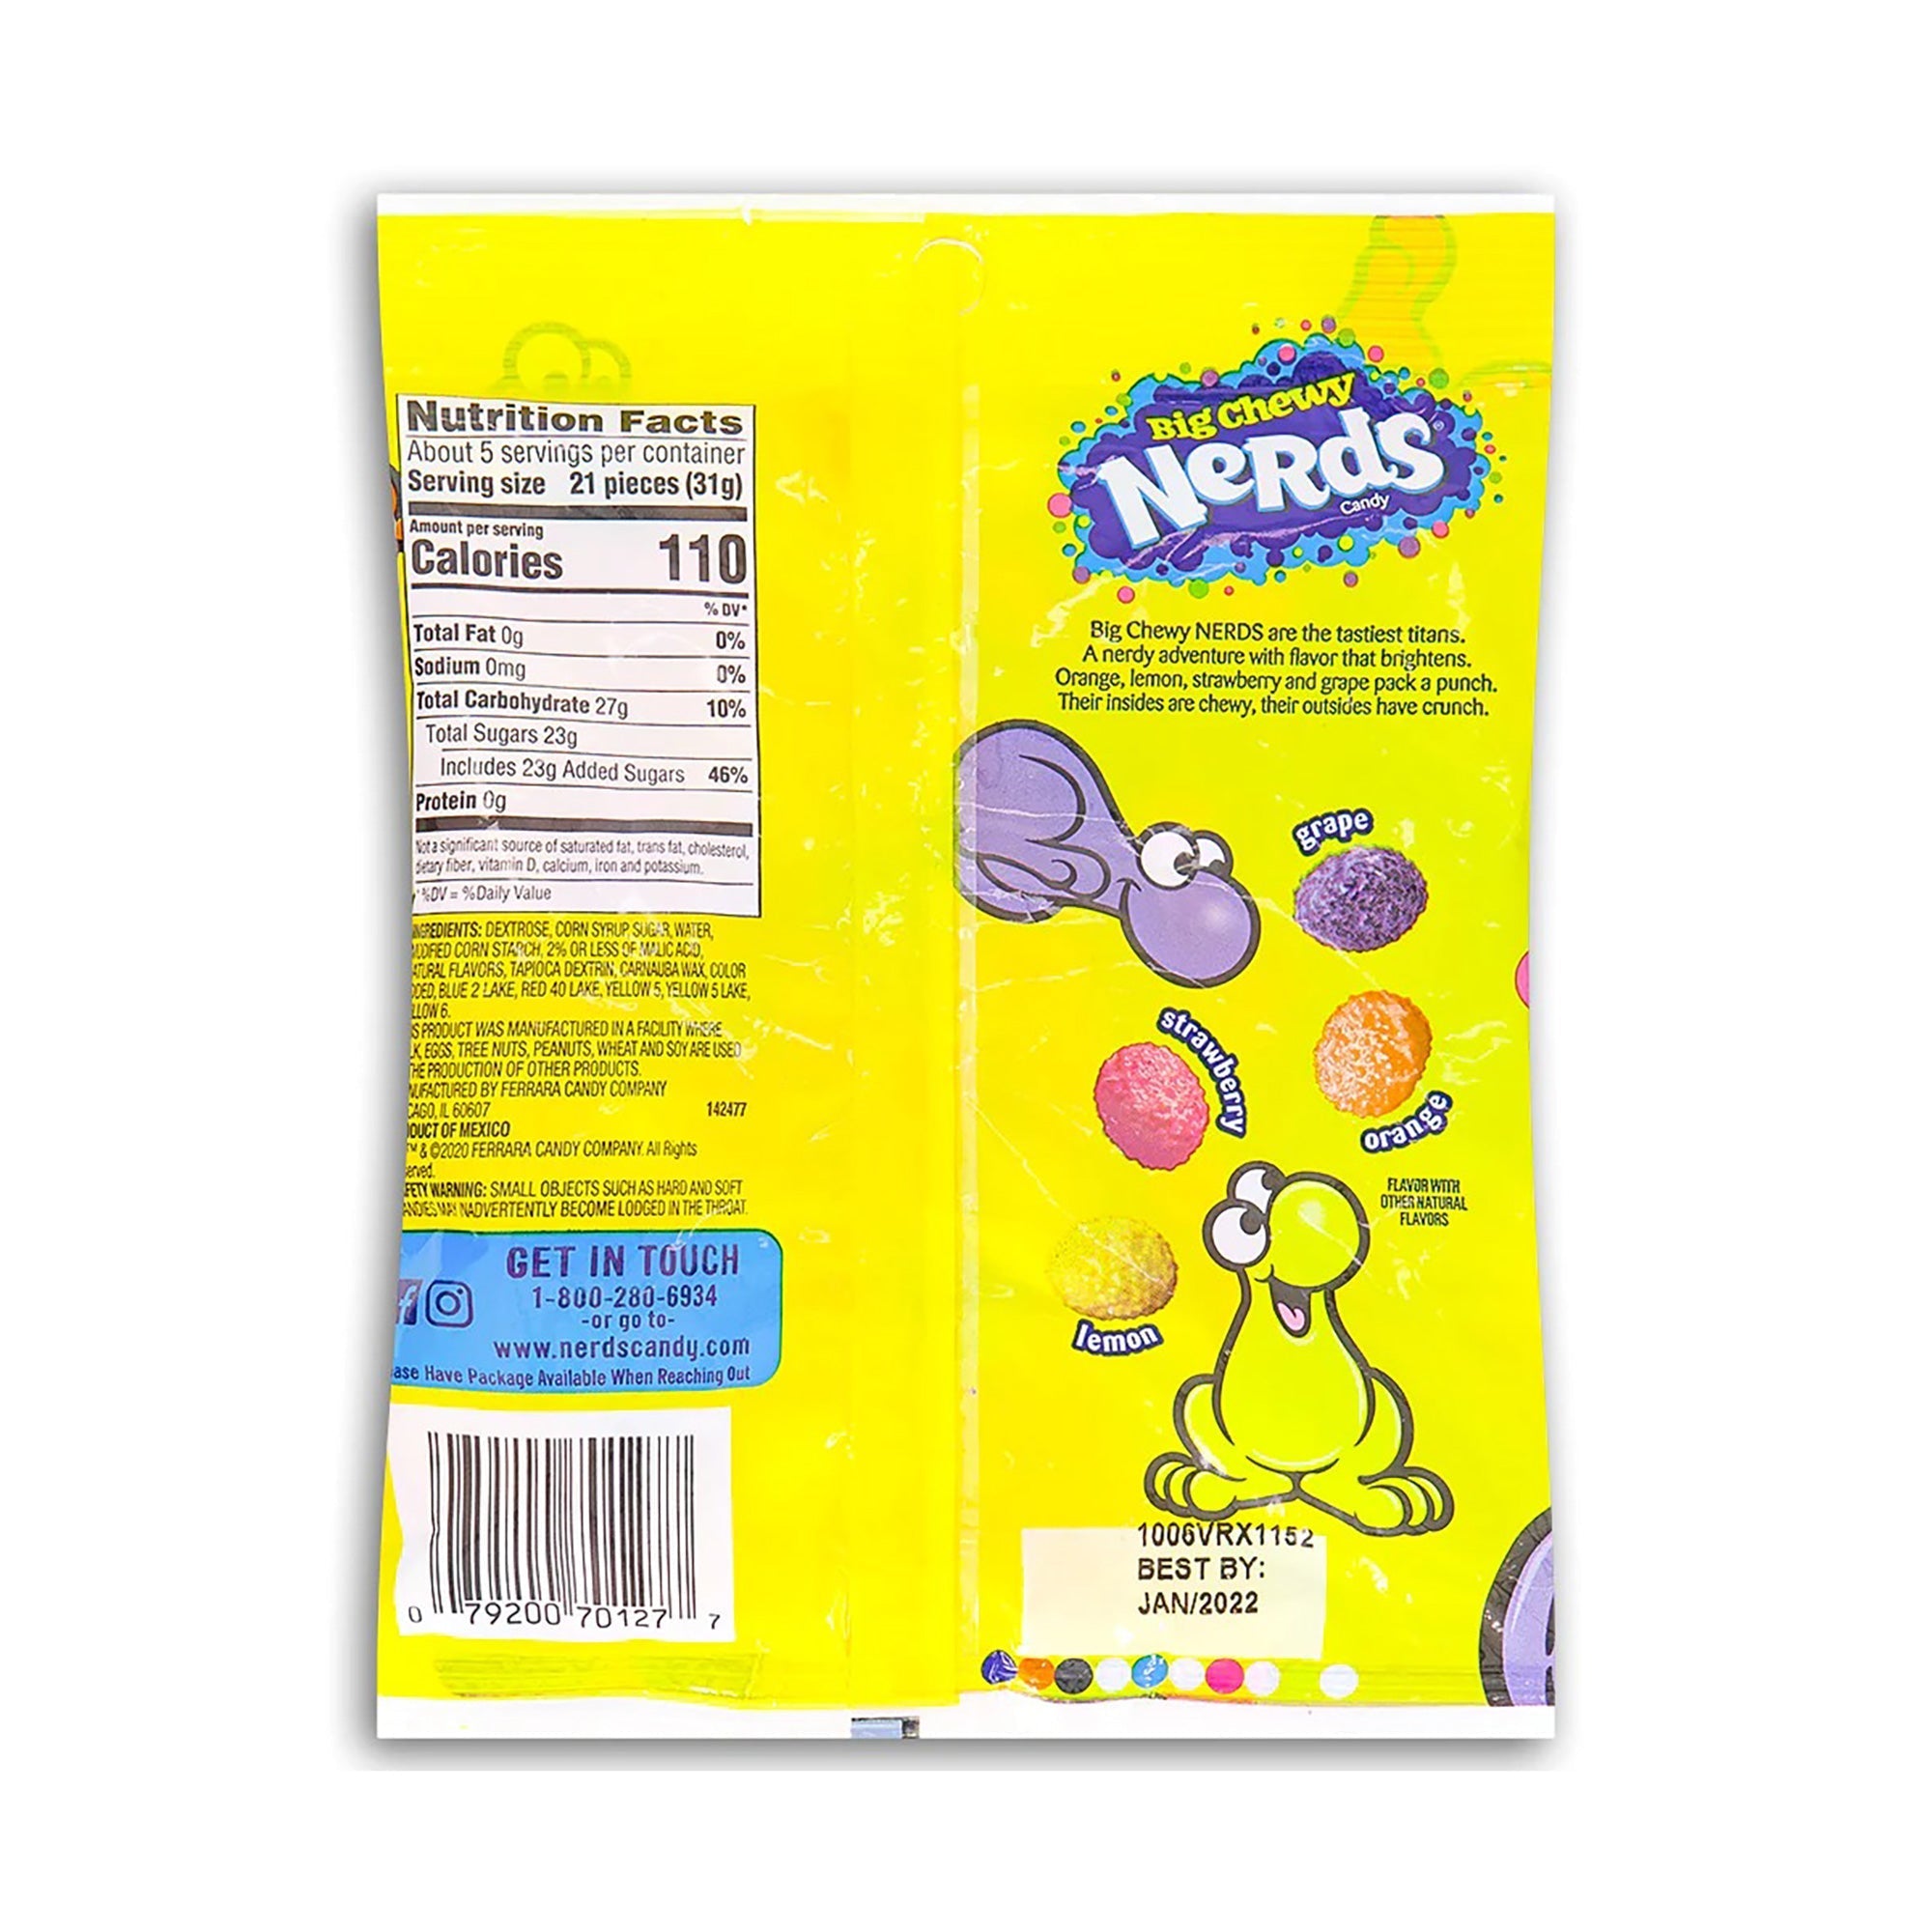 Bonbons tendres Wonka Nerds, 170g, 1 unité